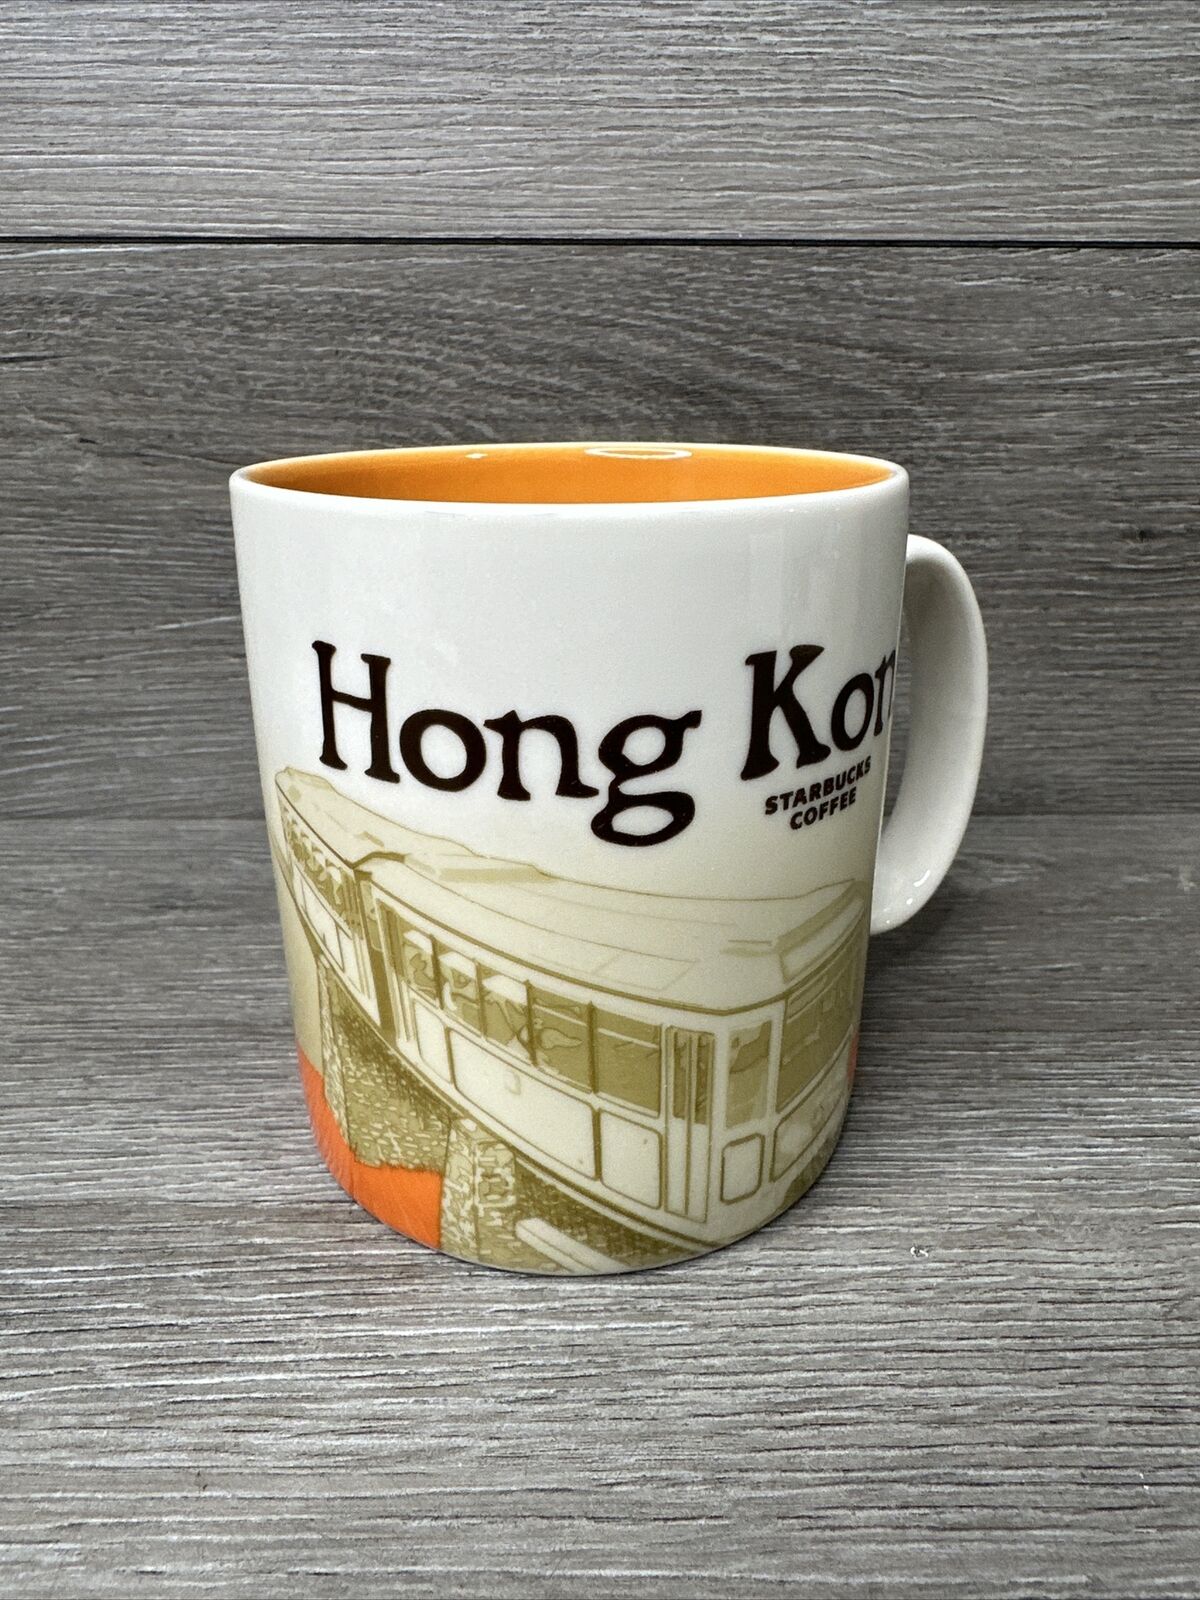 Starbucks Hong Kong Global Icon Coffee City Mug Cup 2012 16oz EUC